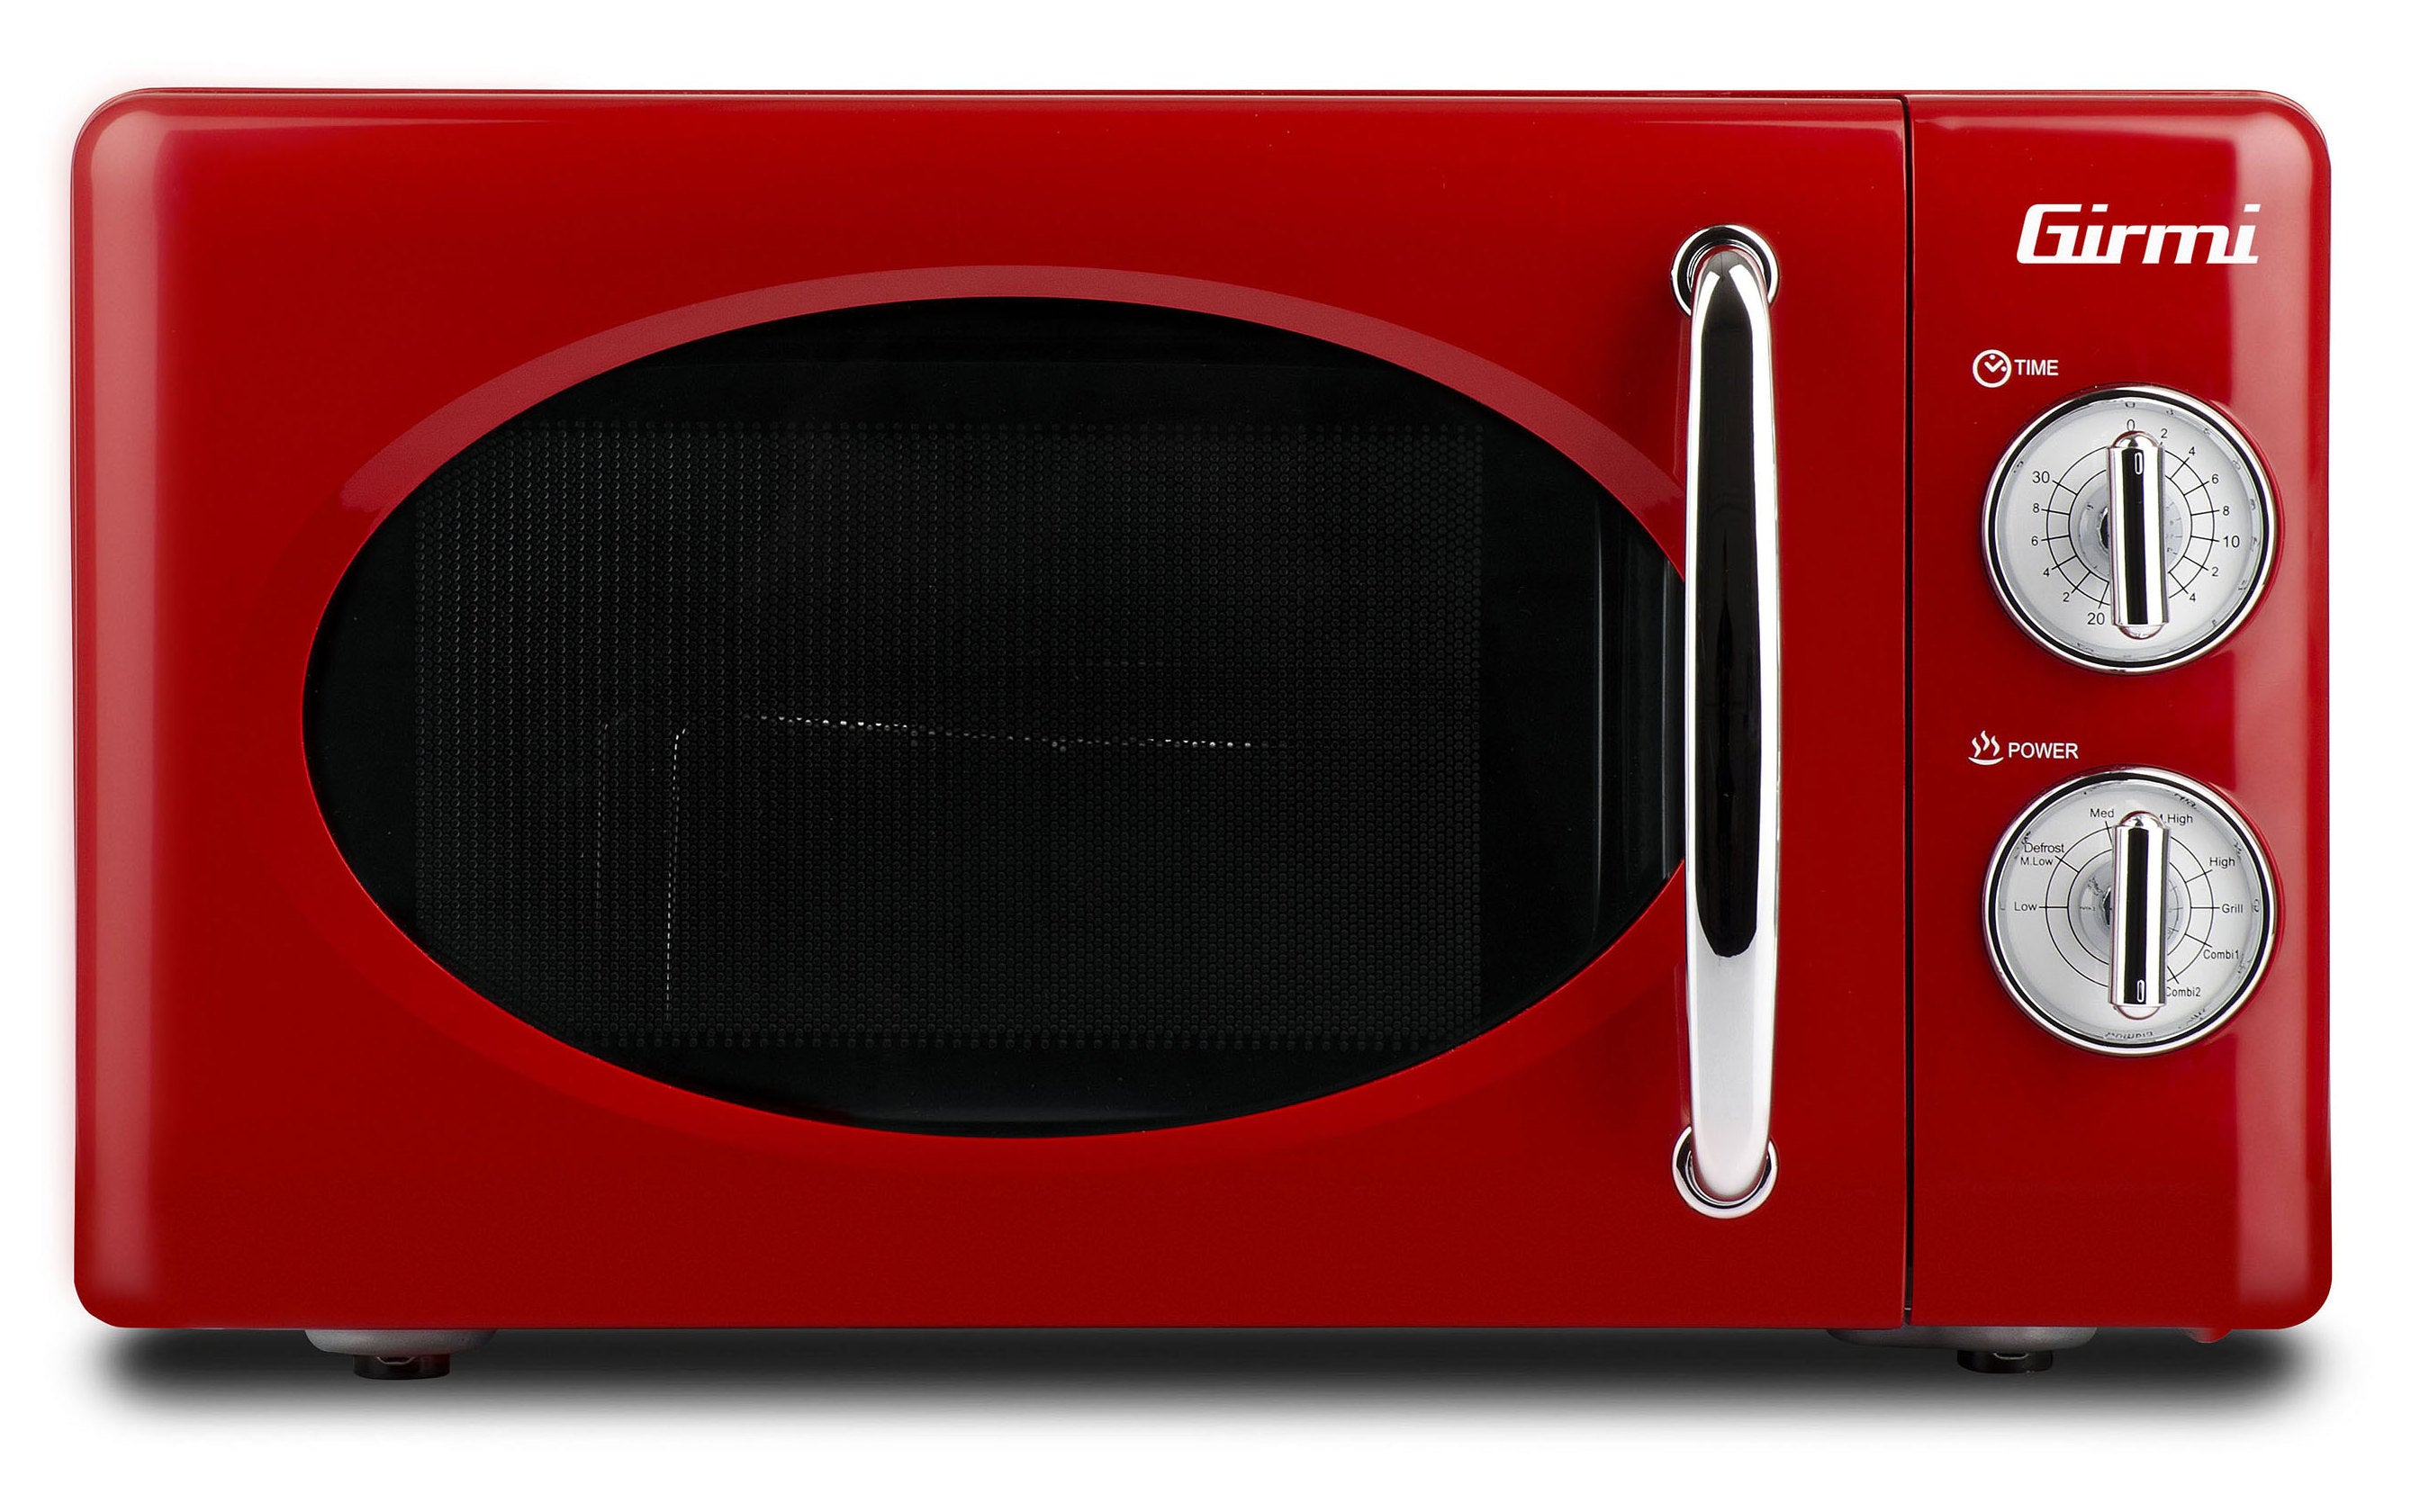 Girmi FM21 Mikrohullámú sütő piros színben